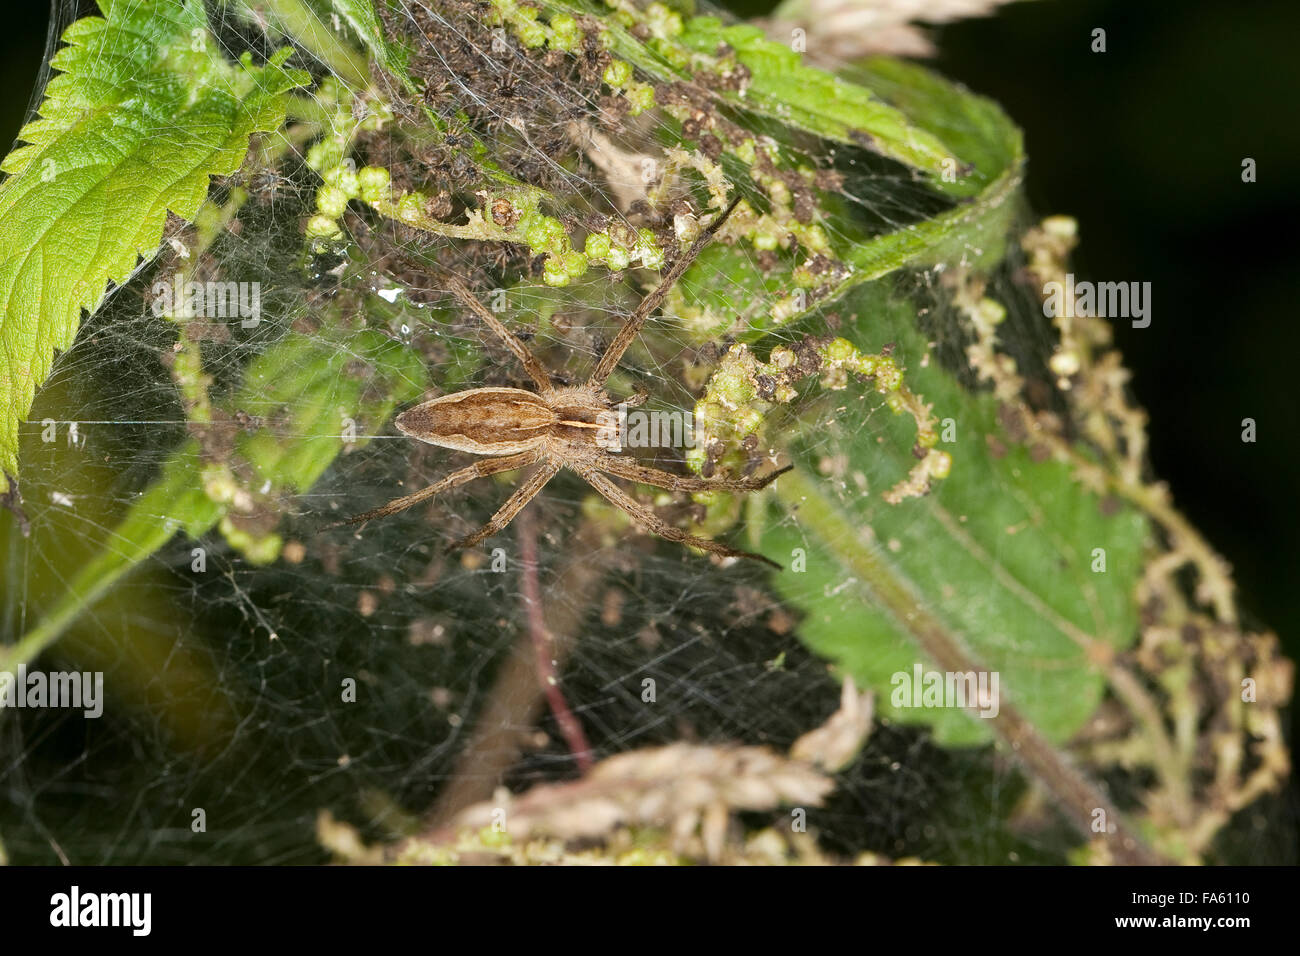 Eine fantastische Fischerei Spider, Nursery Web Spider, Listspinne, Liste-Spinne, Raubspinne, Brautgeschenkspinne, Pisaura mirabilis Stockfoto